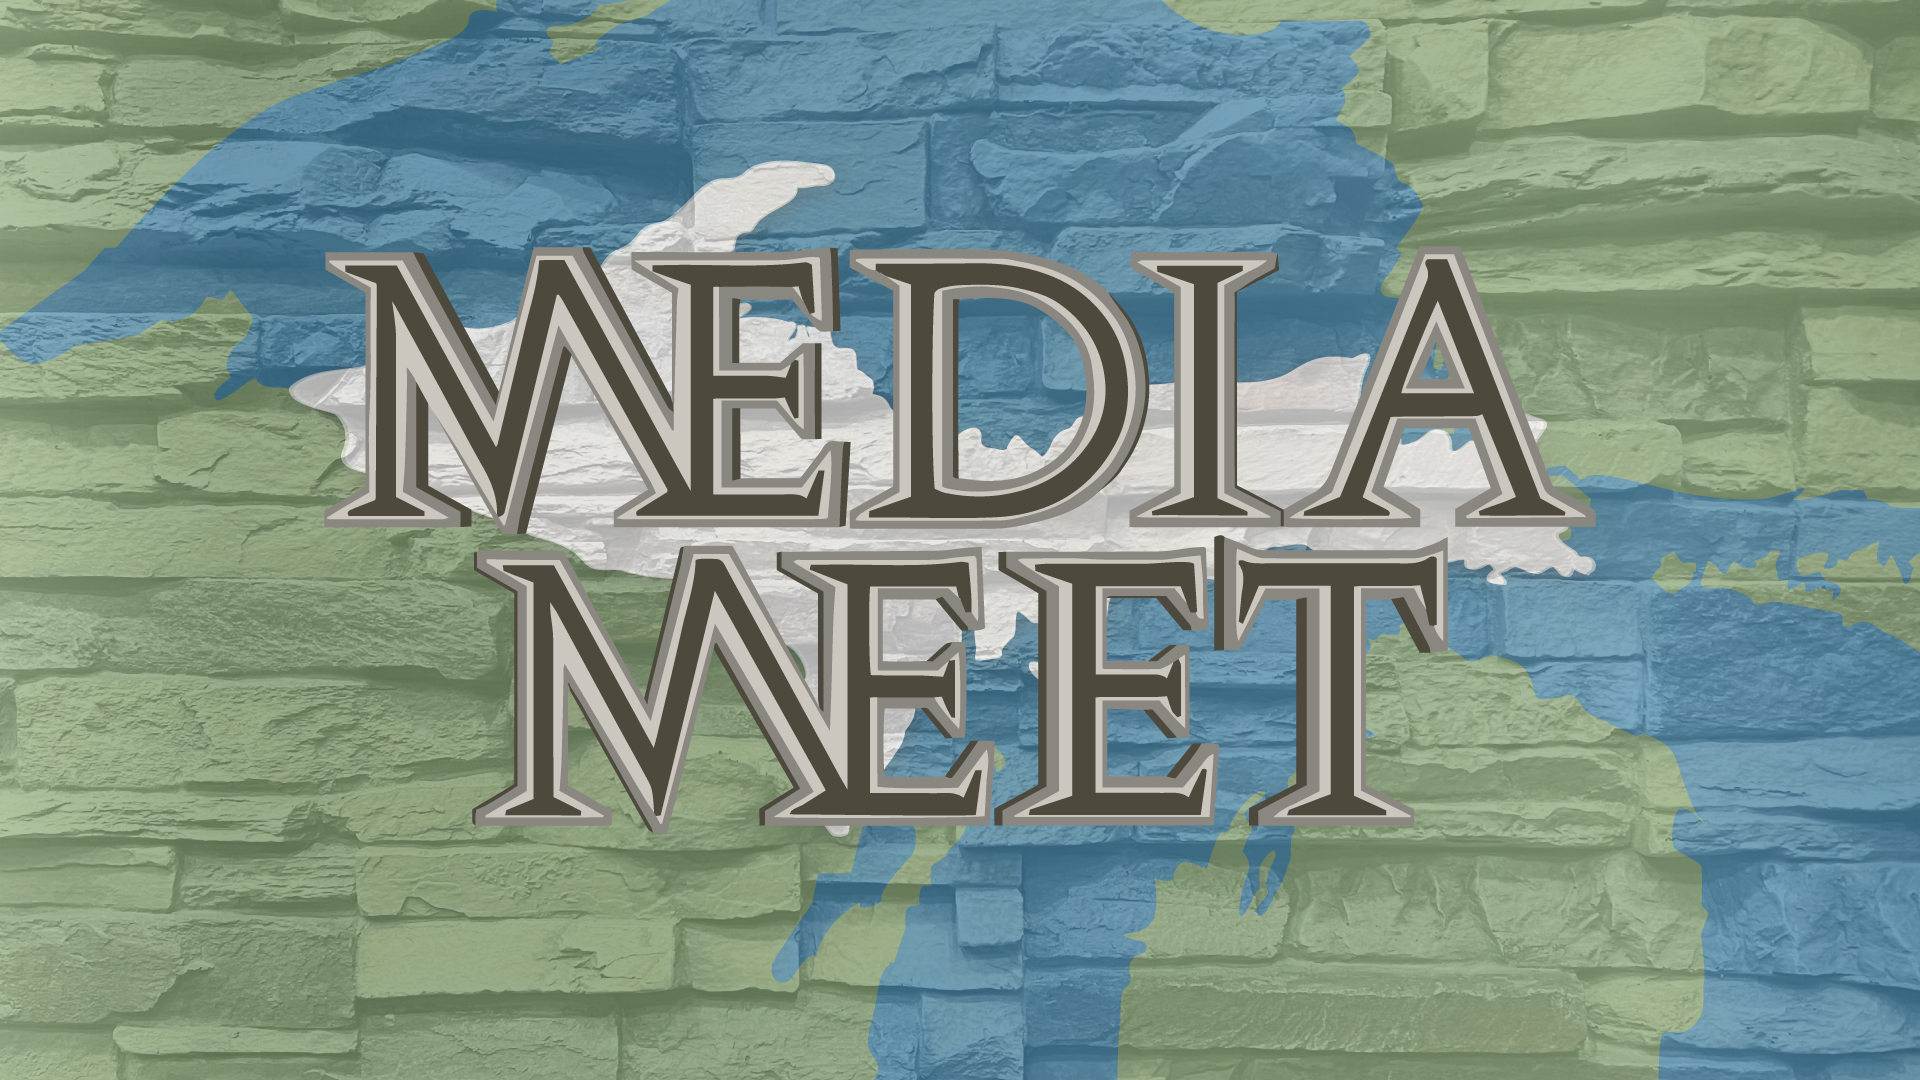 Media Meet